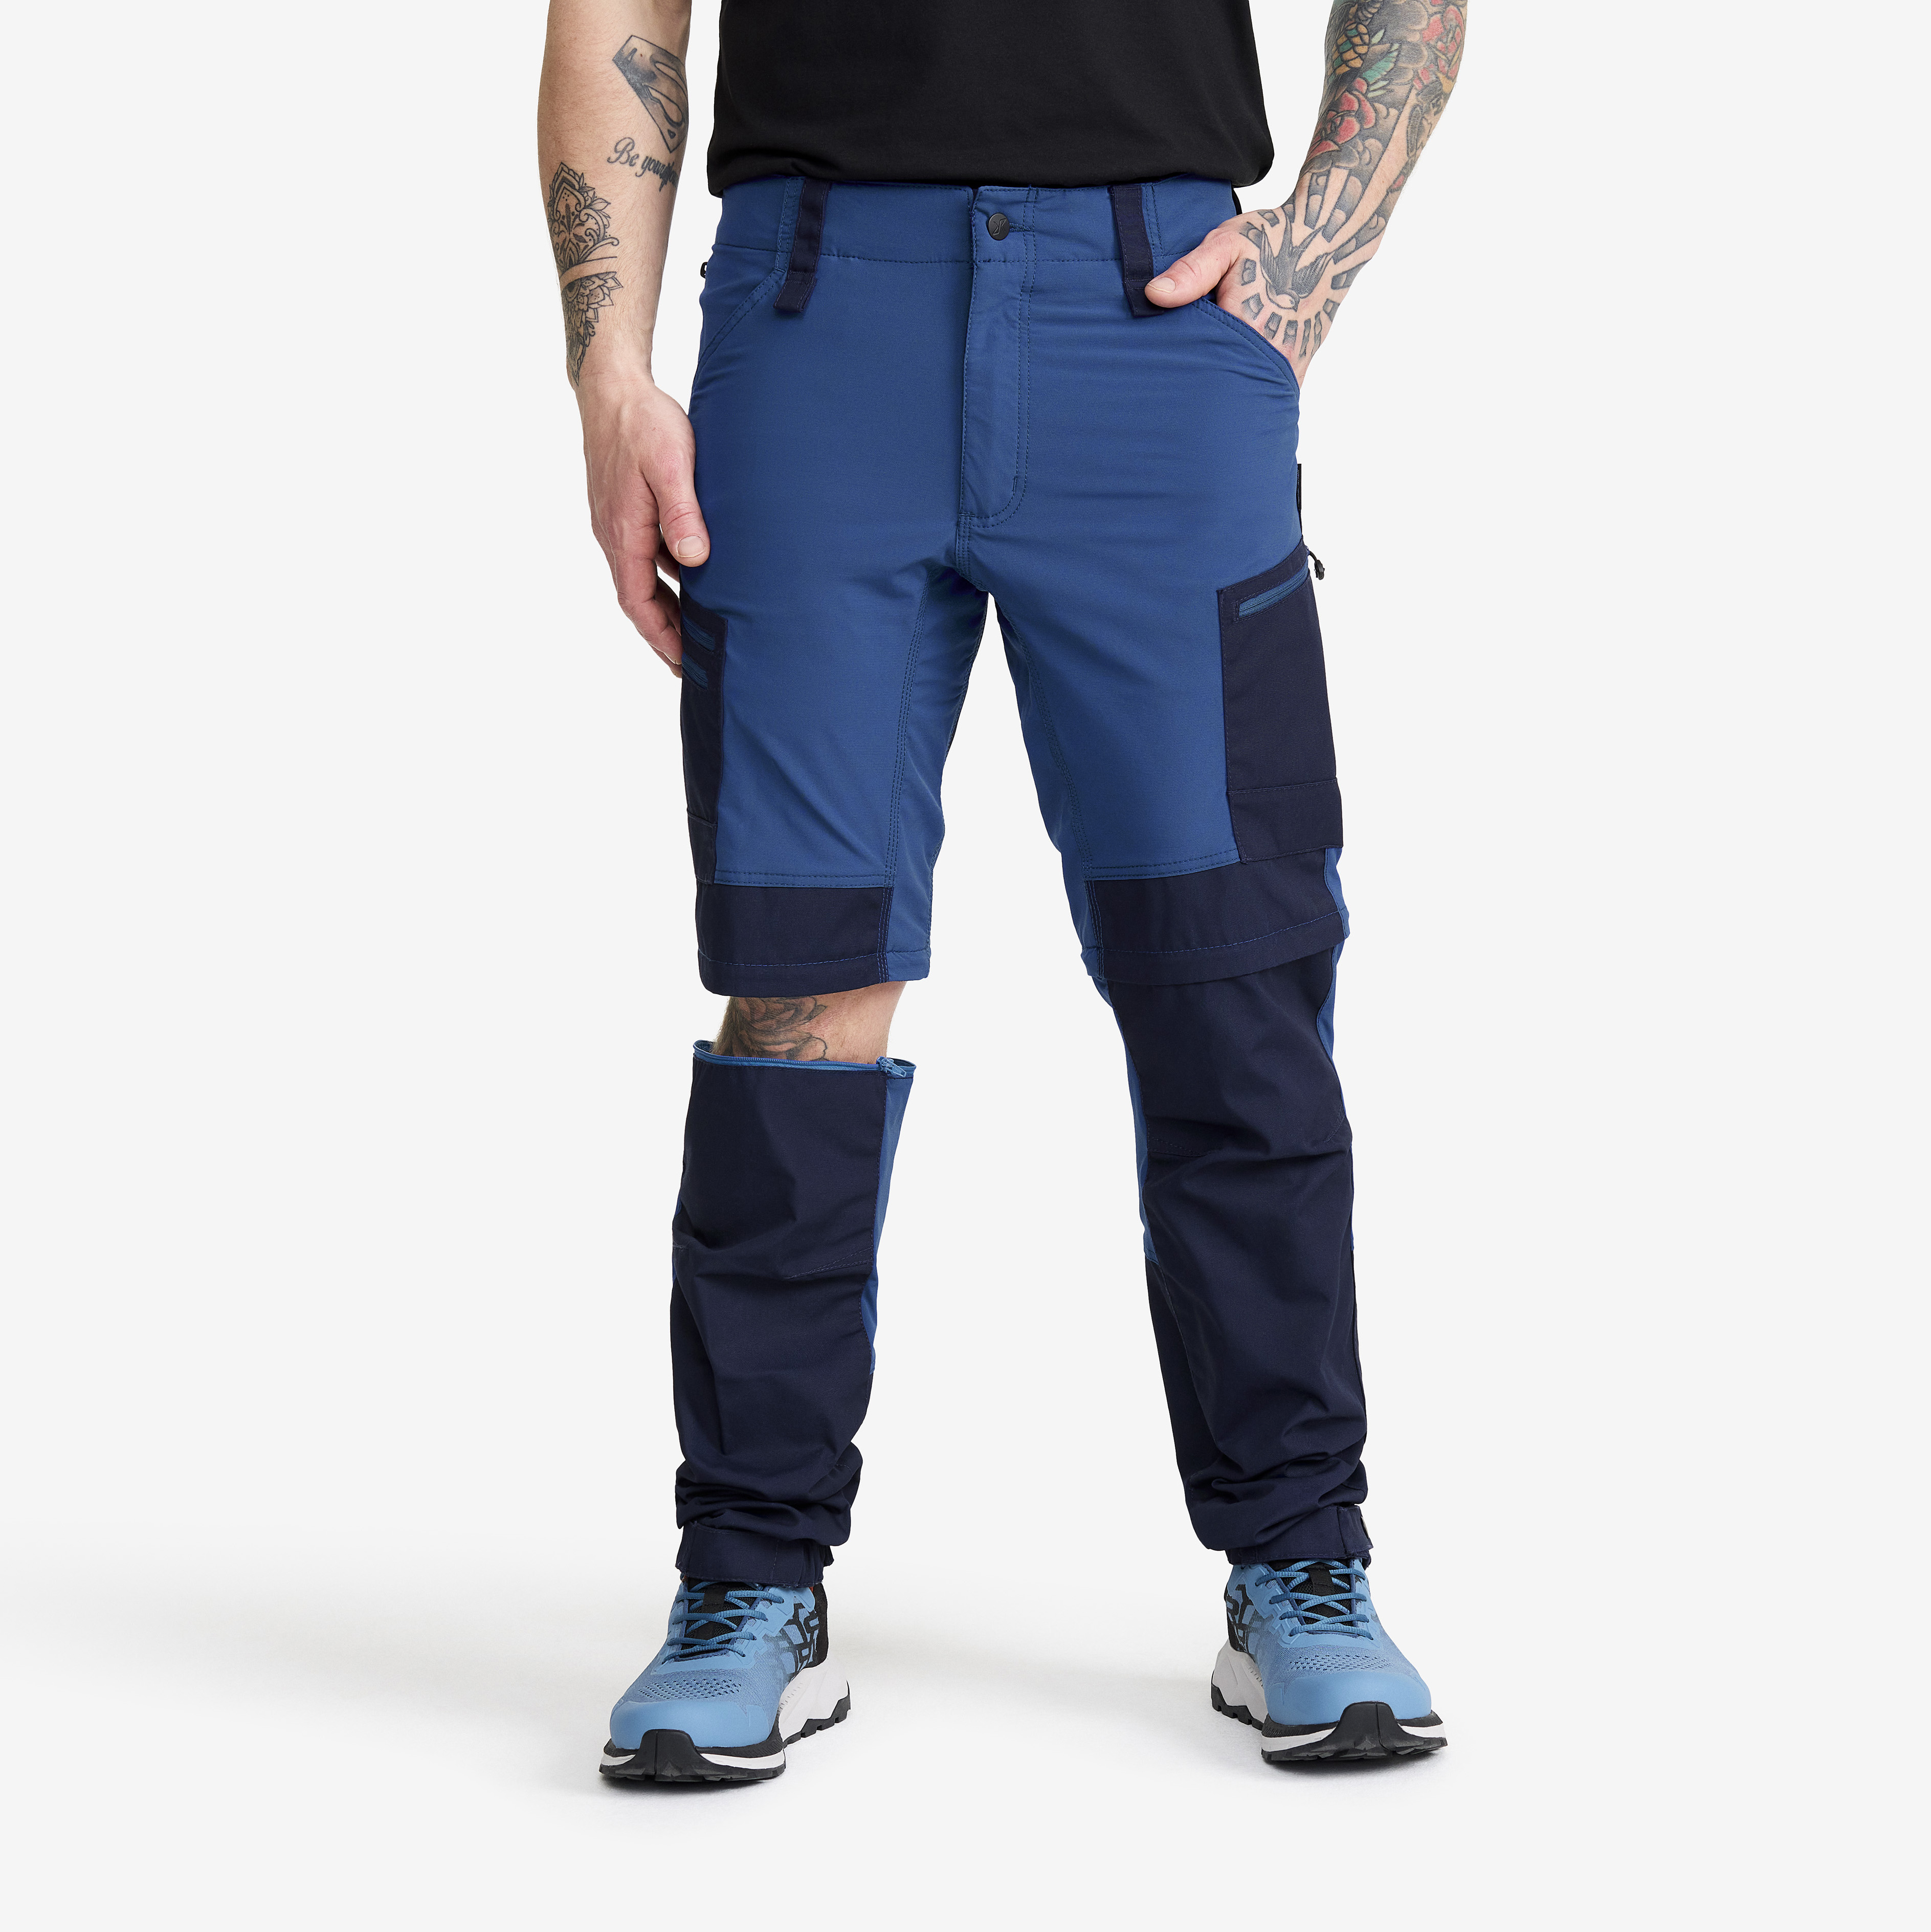 RVRC GP Pro Zip-off vandrebukser for mænd i mørkeblå